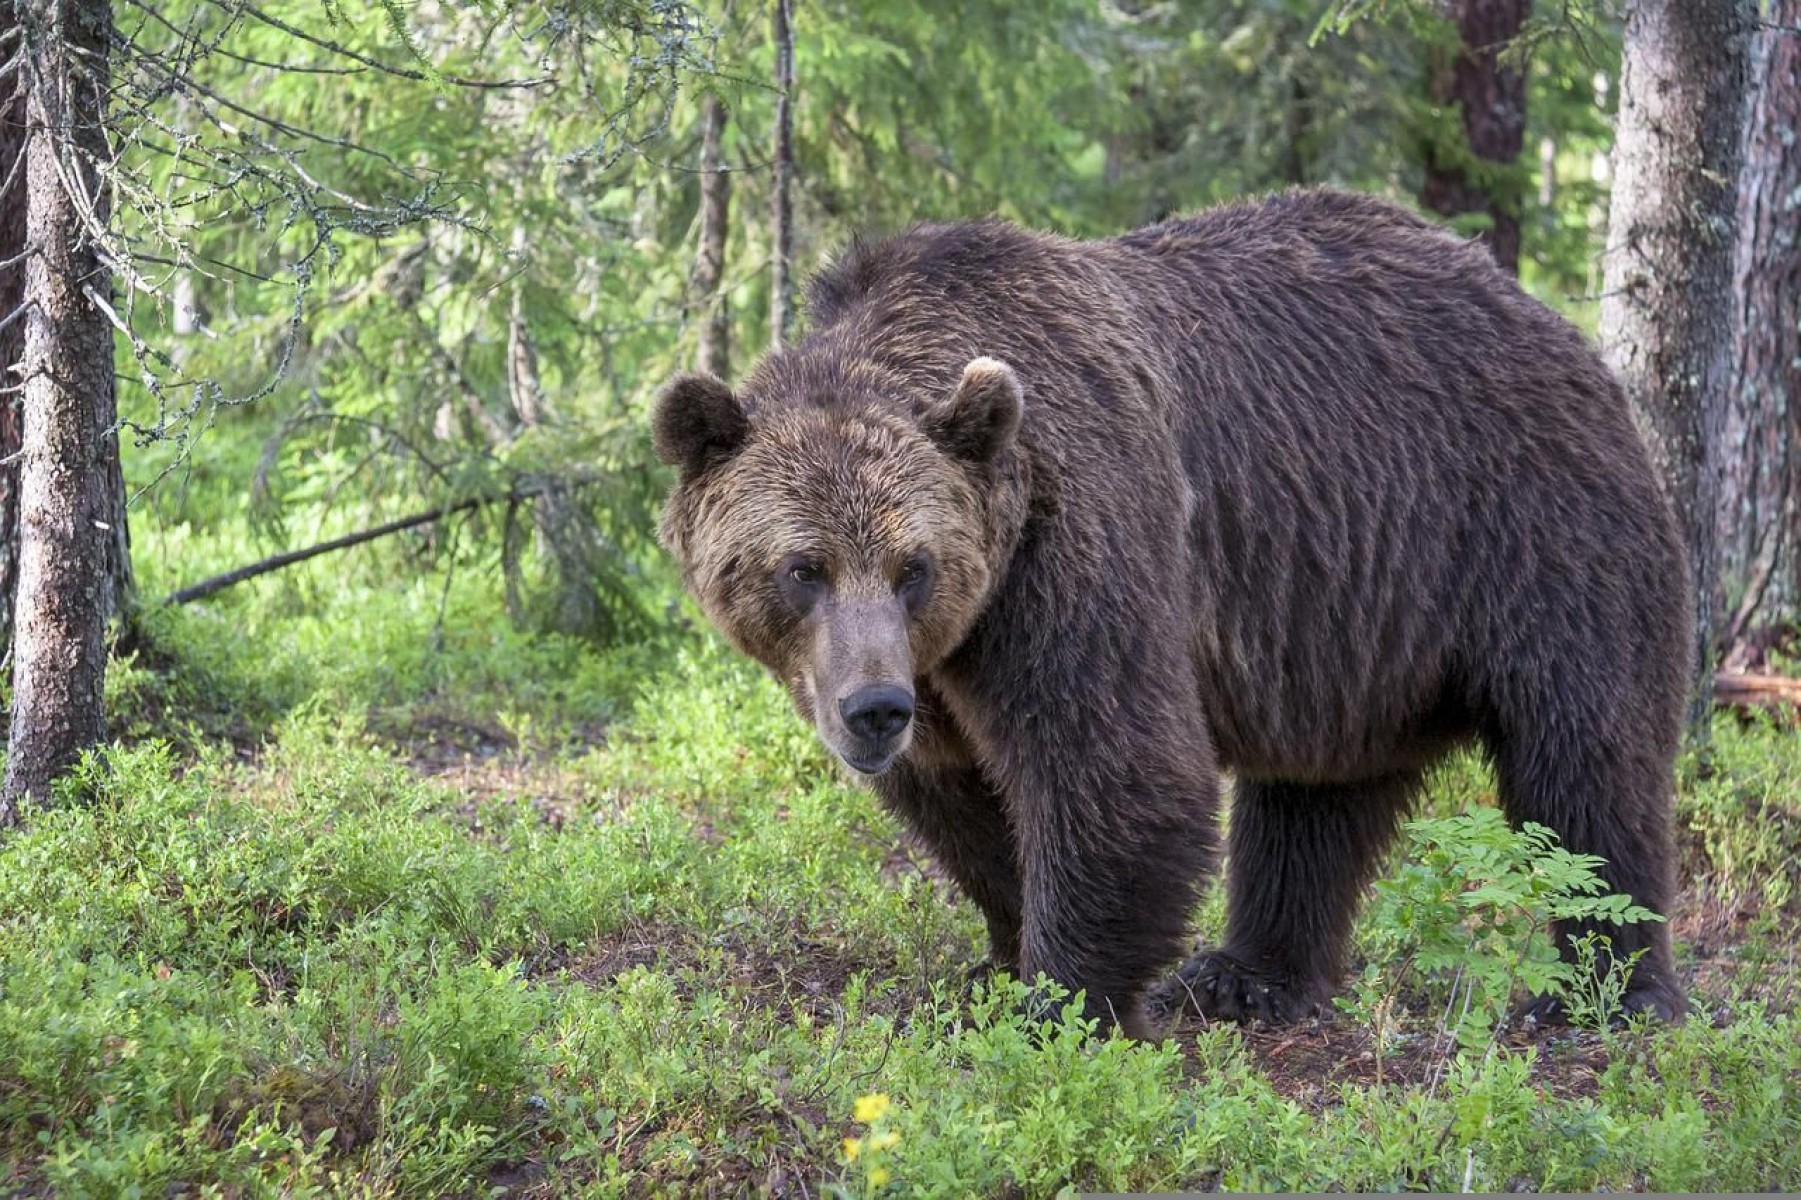 Romániában 243 medvét lőttek ki engedéllyel az utóbbi három évben